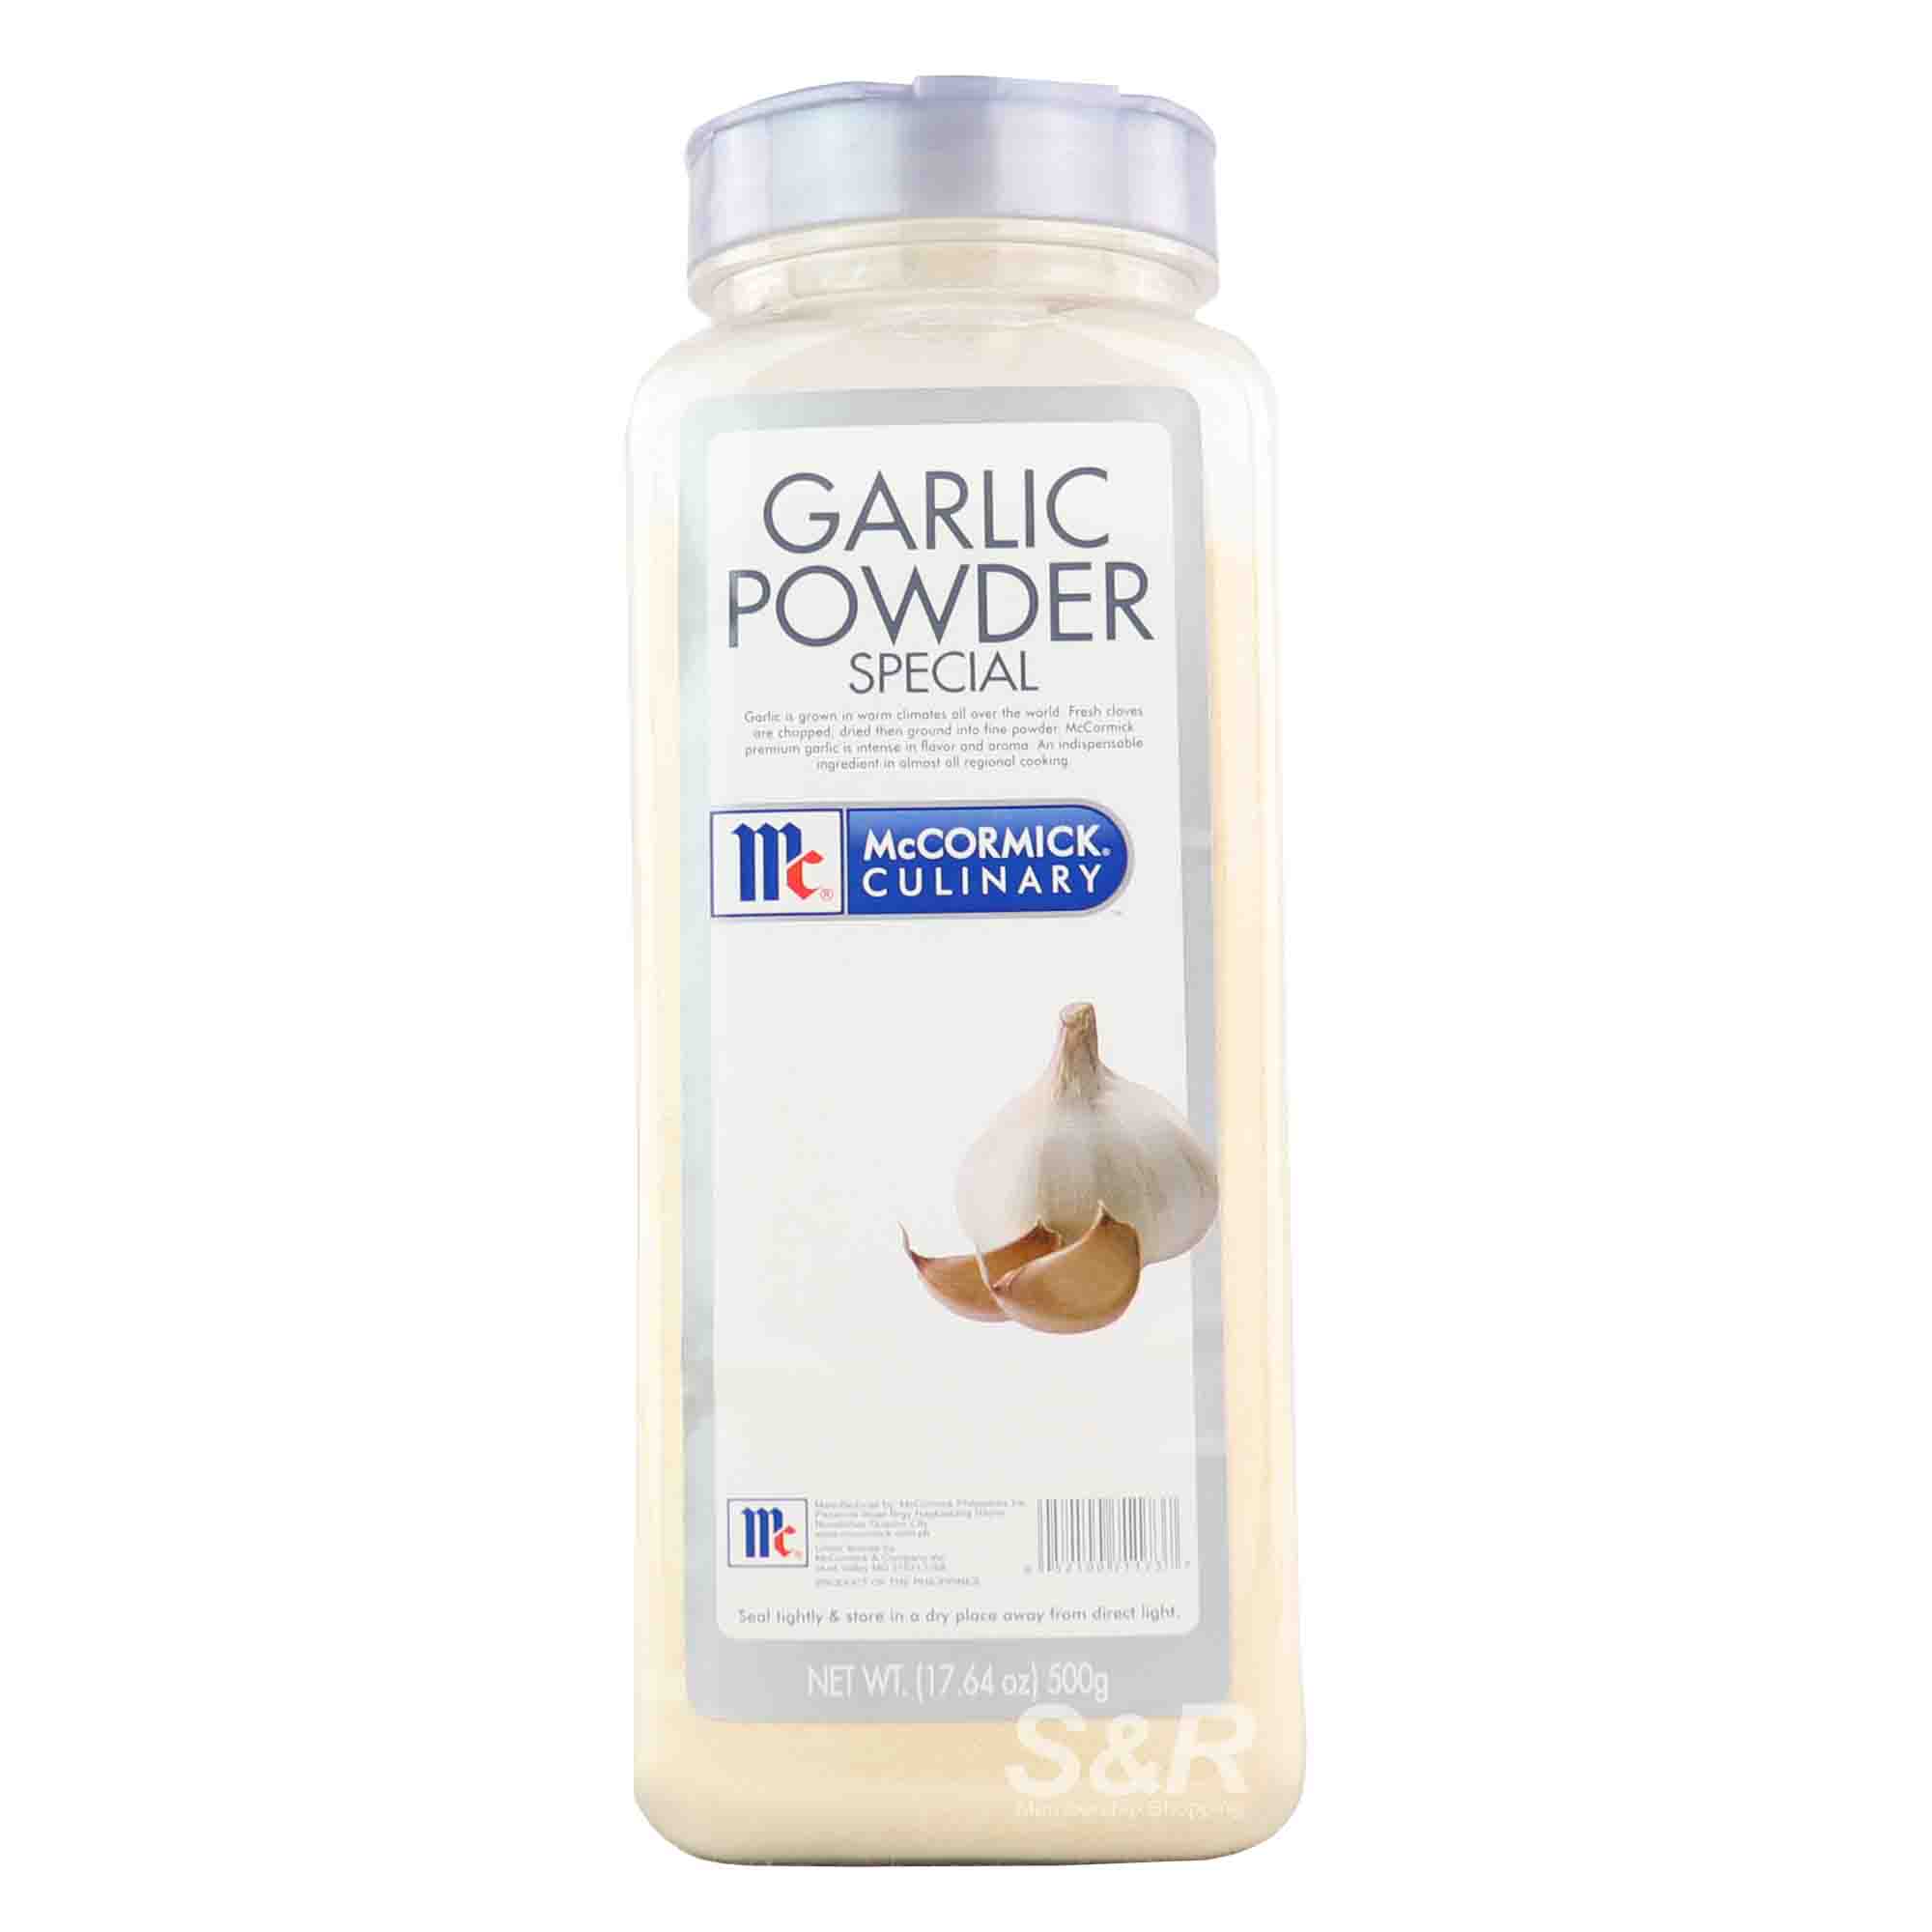 McCormick Culinary Special Garlic Powder 500g